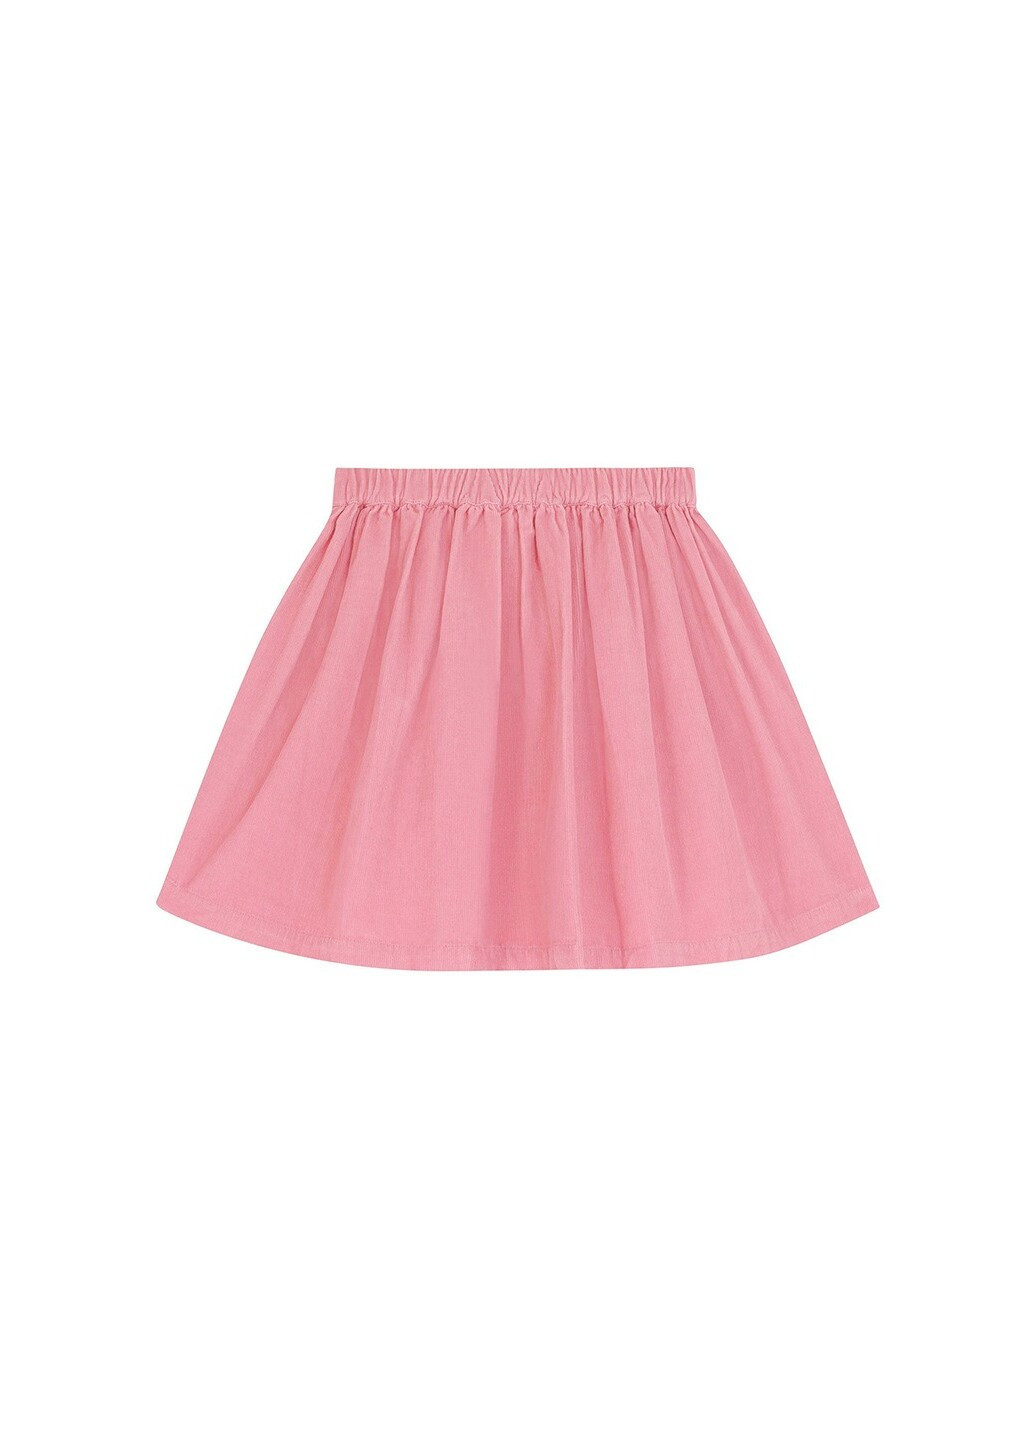 Розовая цветочной расцветки юбка Berni kids